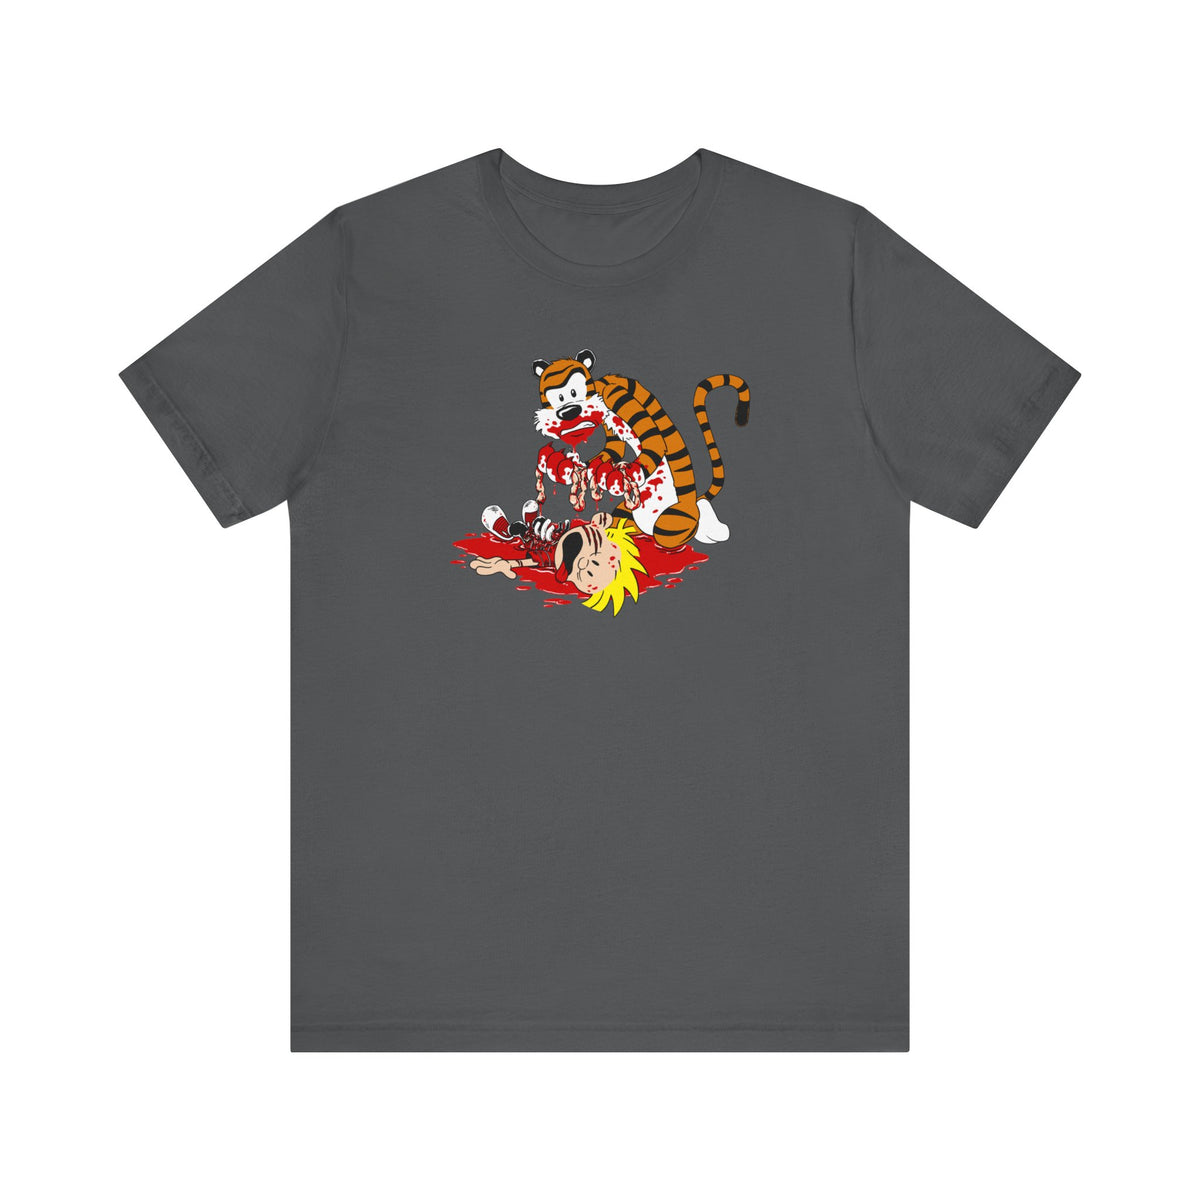 Hobbes' Revenge - Men's T-Shirt